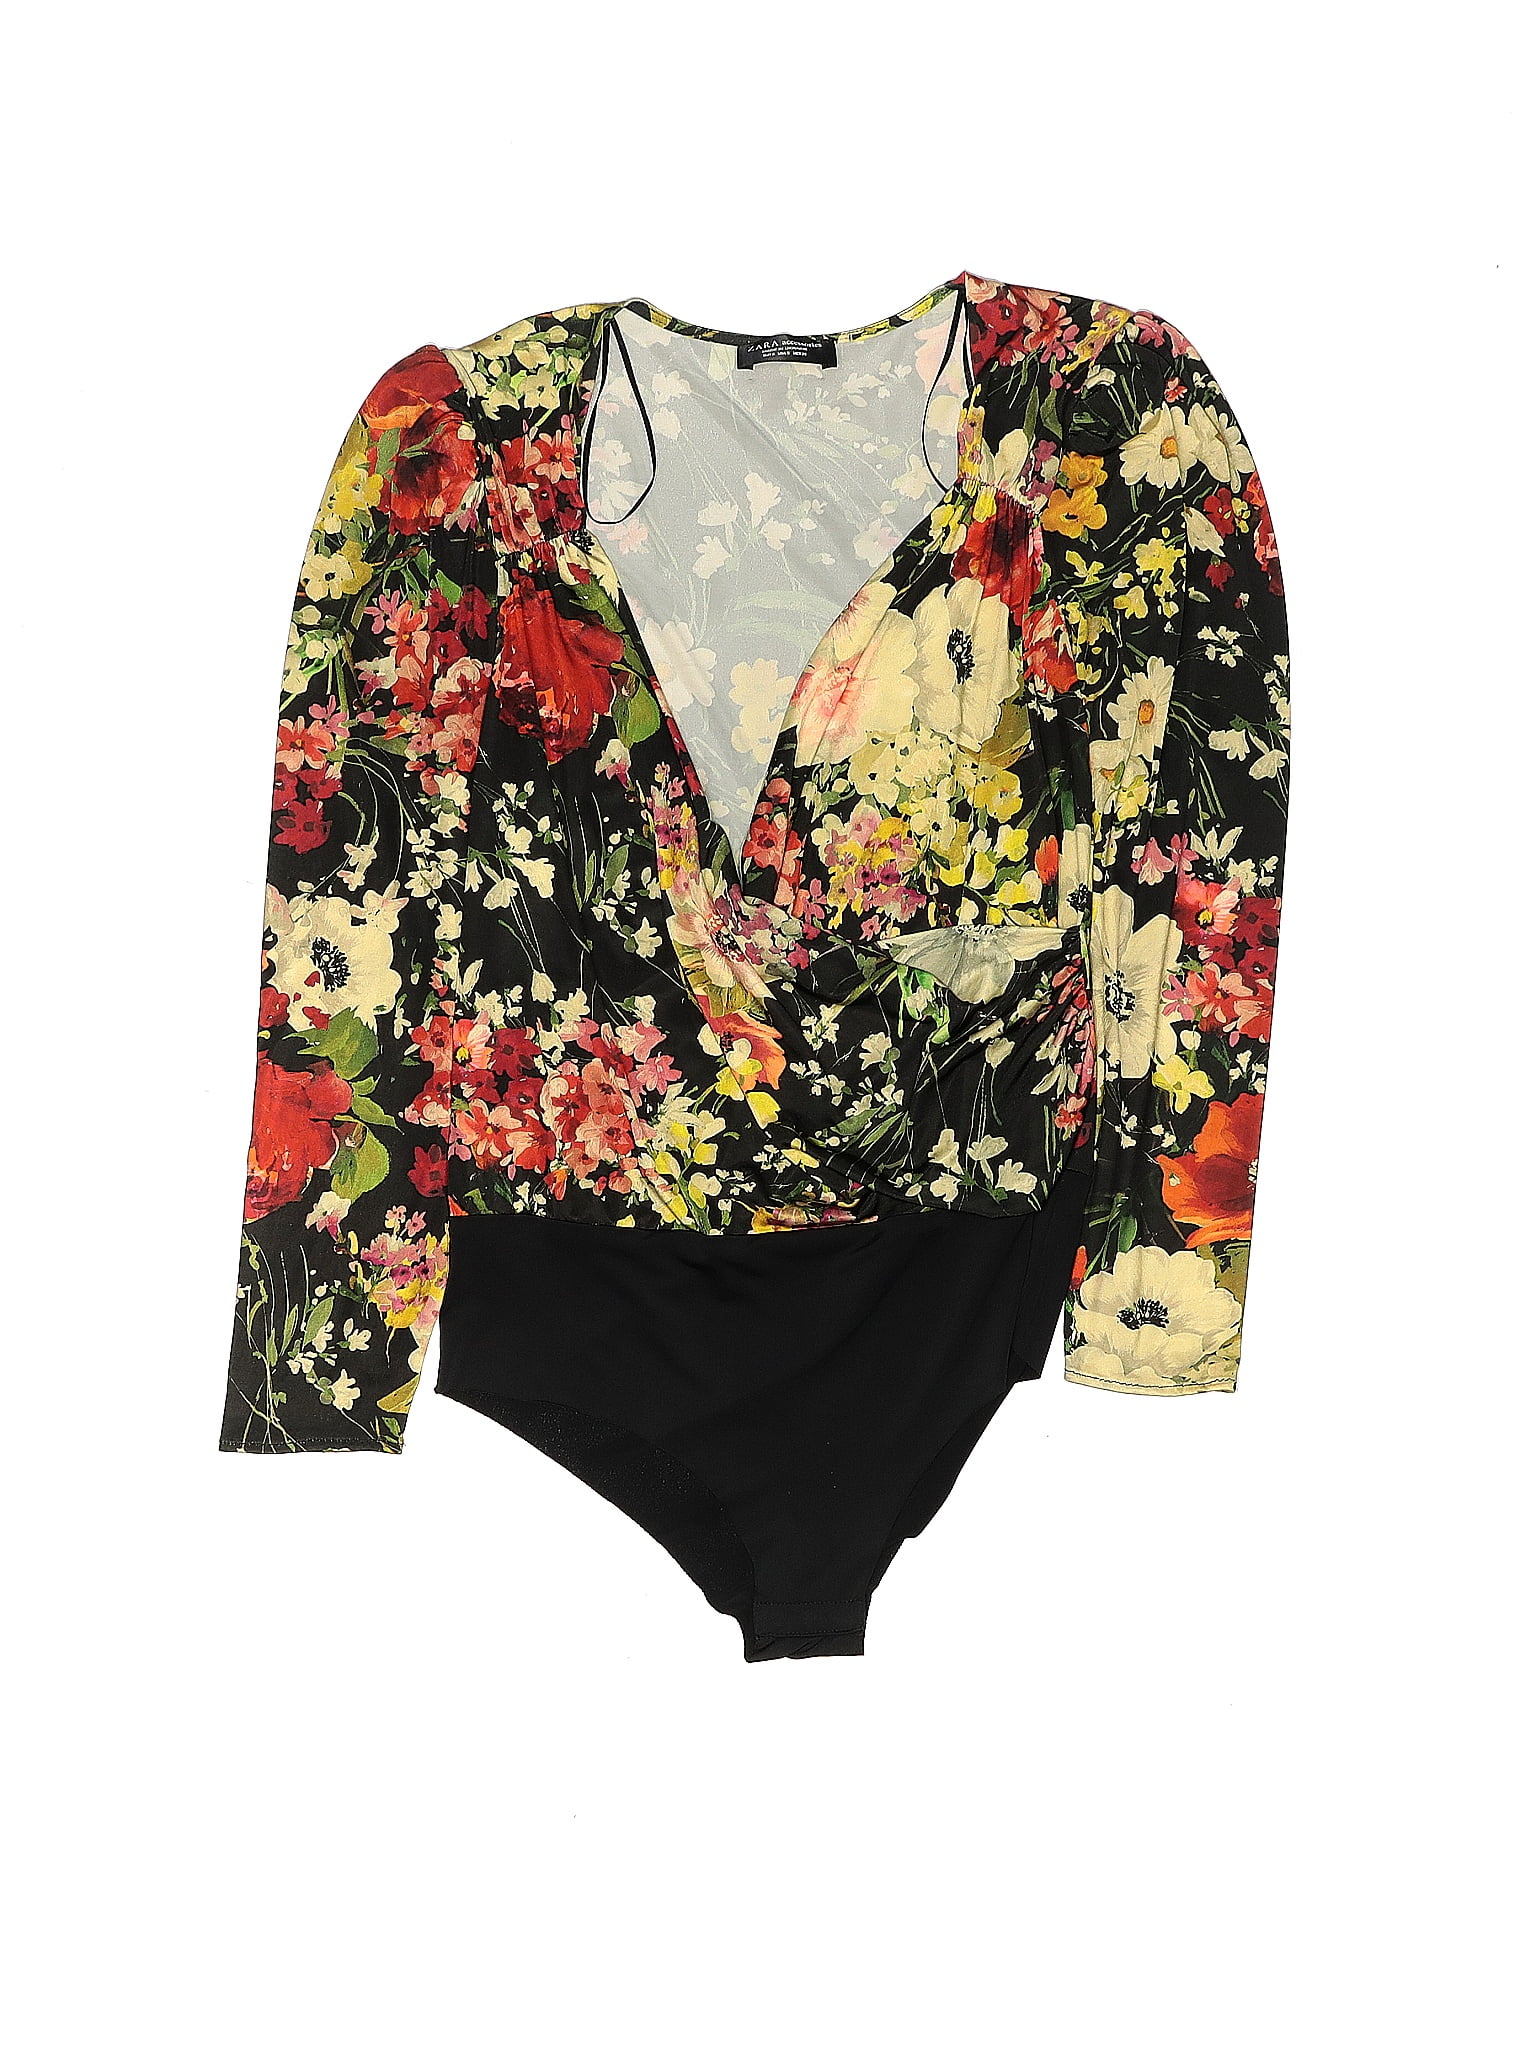 Zara Floral Bodysuit - Gem